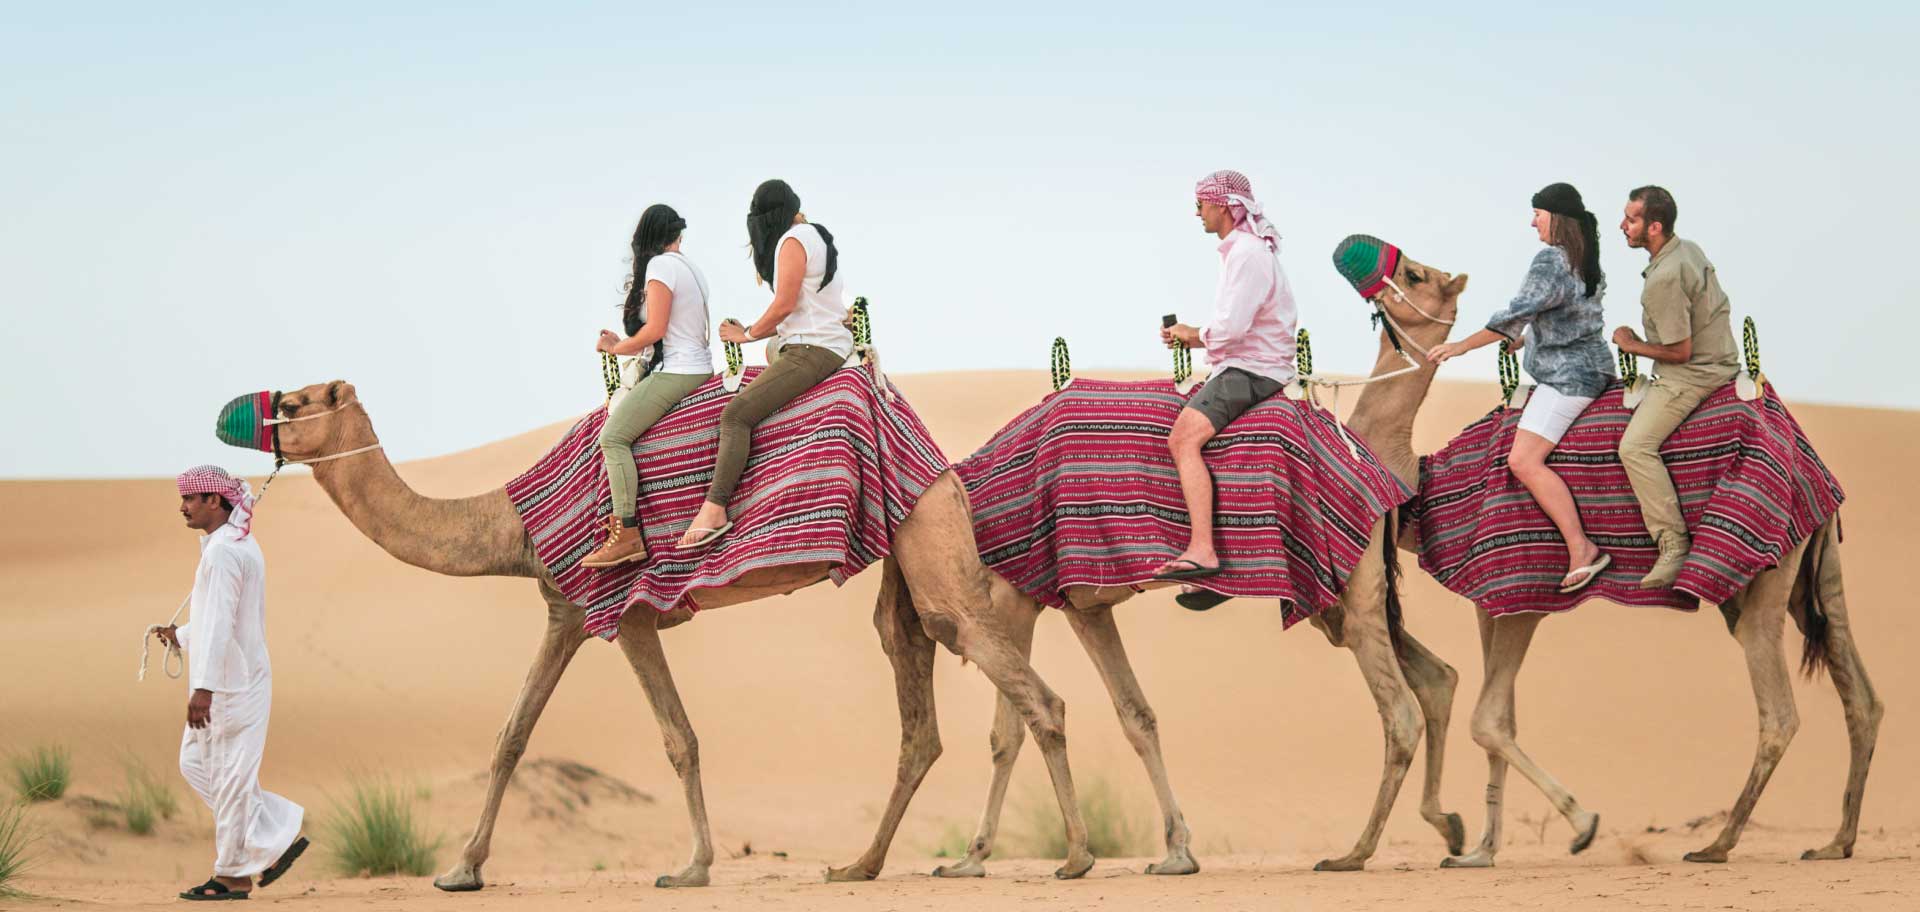 Camel Desert Safari